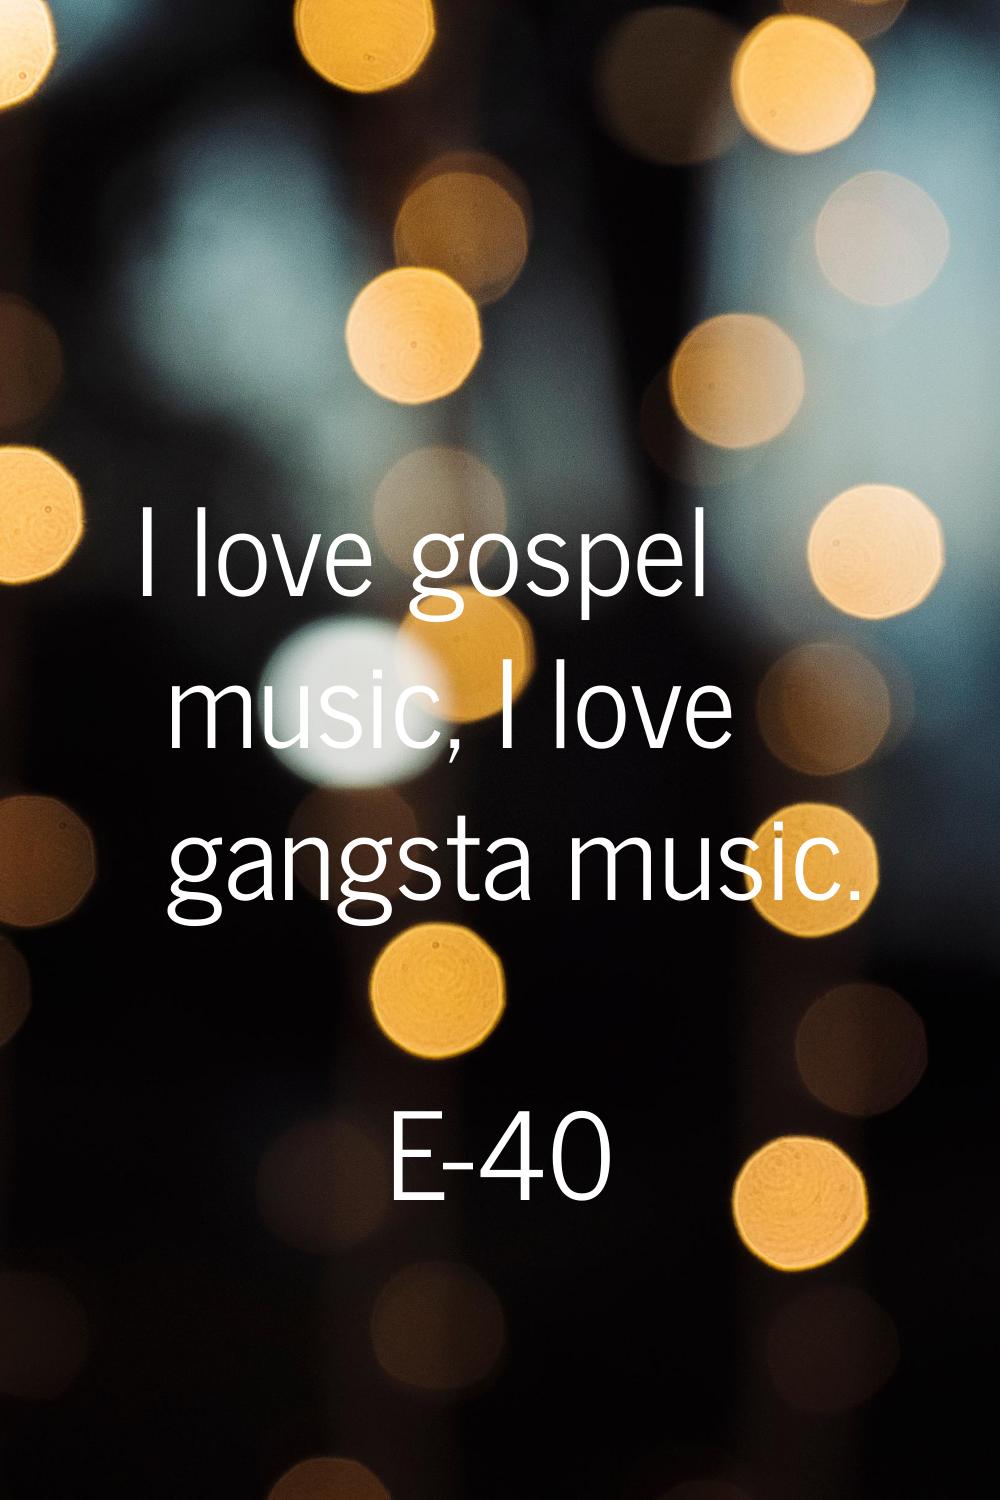 I love gospel music, I love gangsta music.